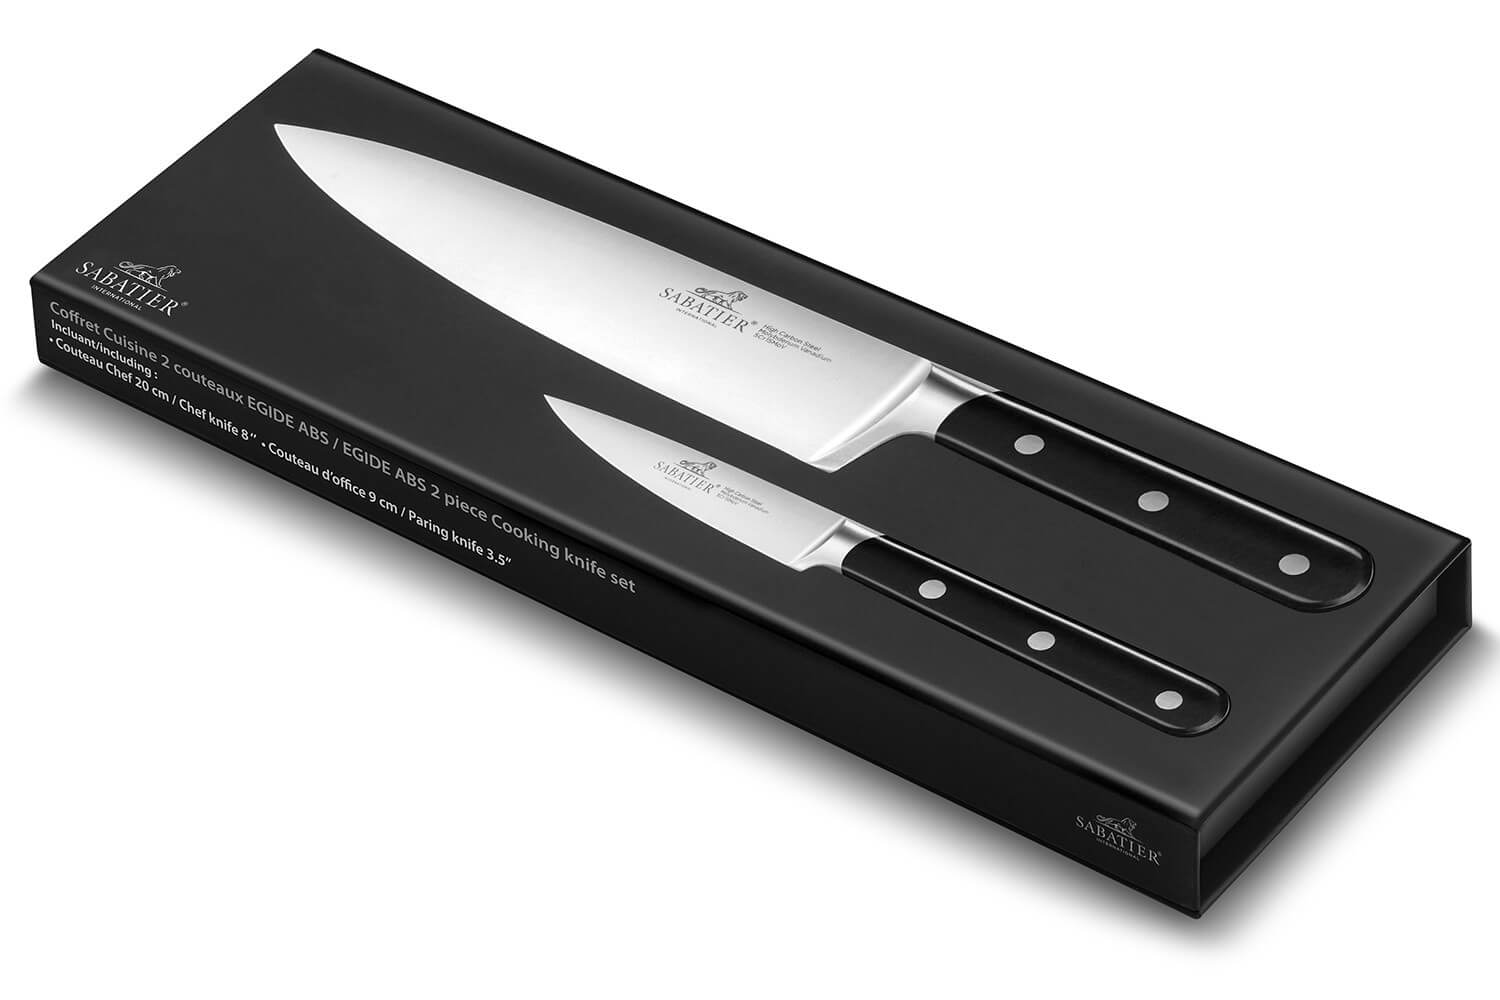 Couteau d'office Tojiro Shippu Damas Paring 9 cm